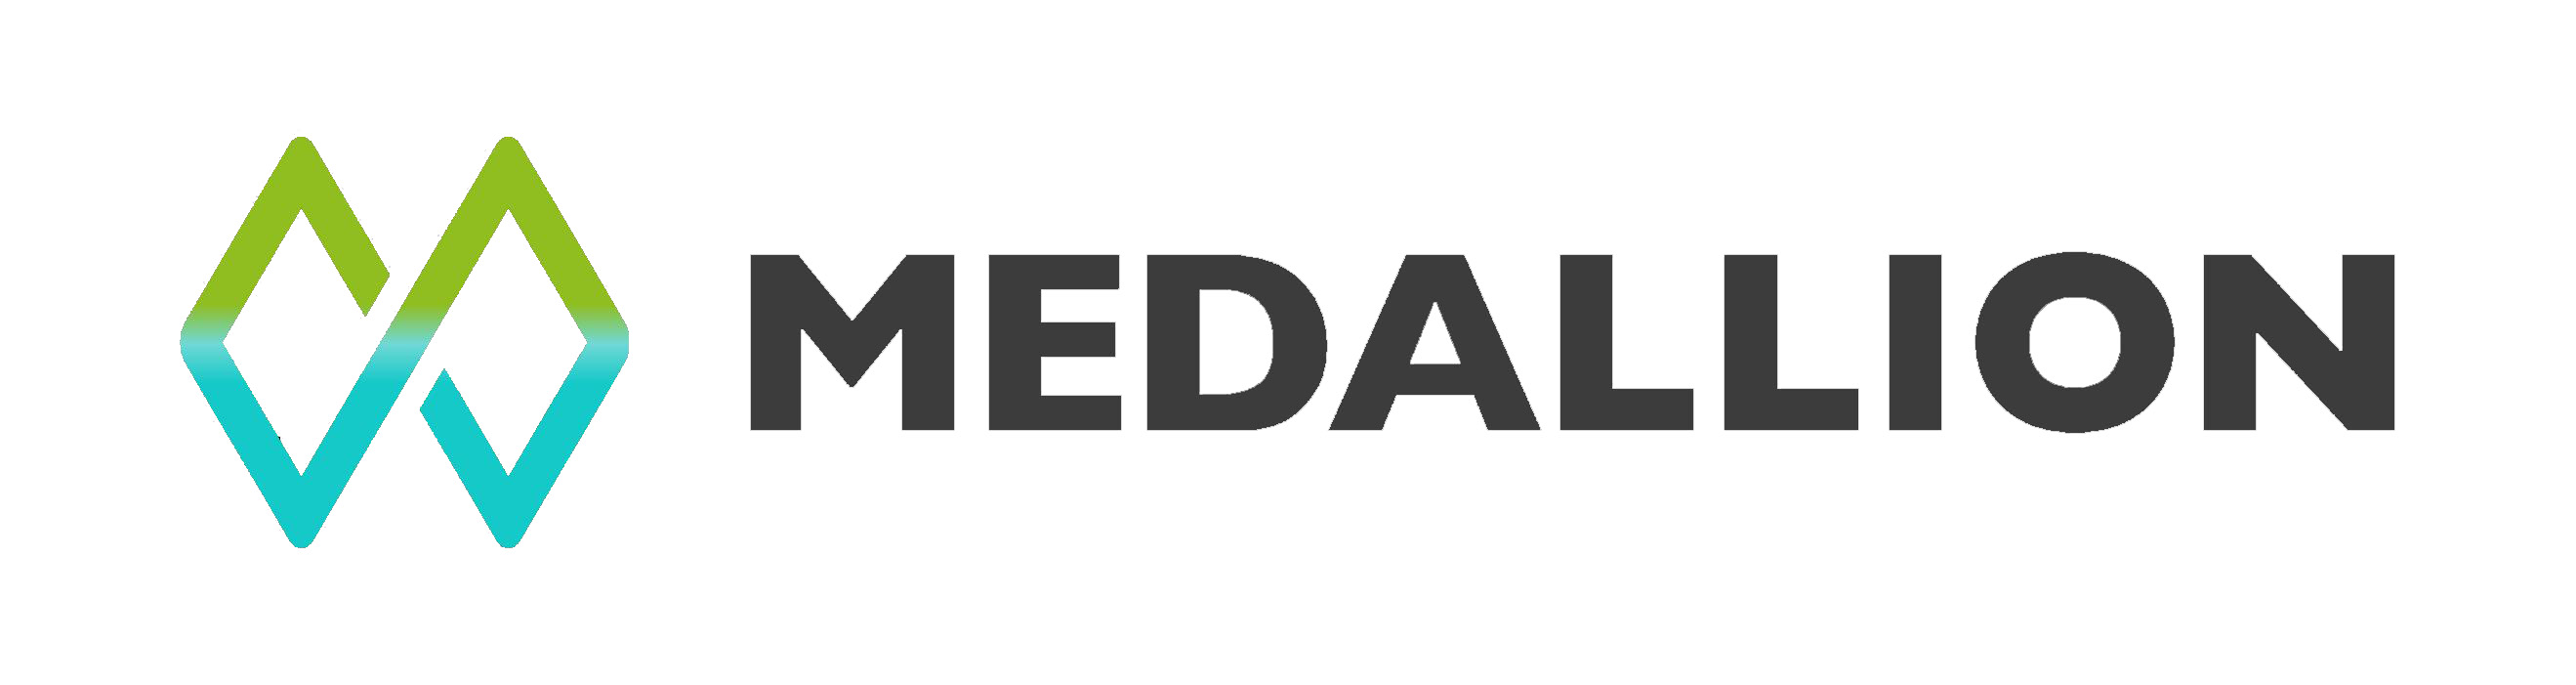 Medallion Changes Name to Gabo Mining Ltd.